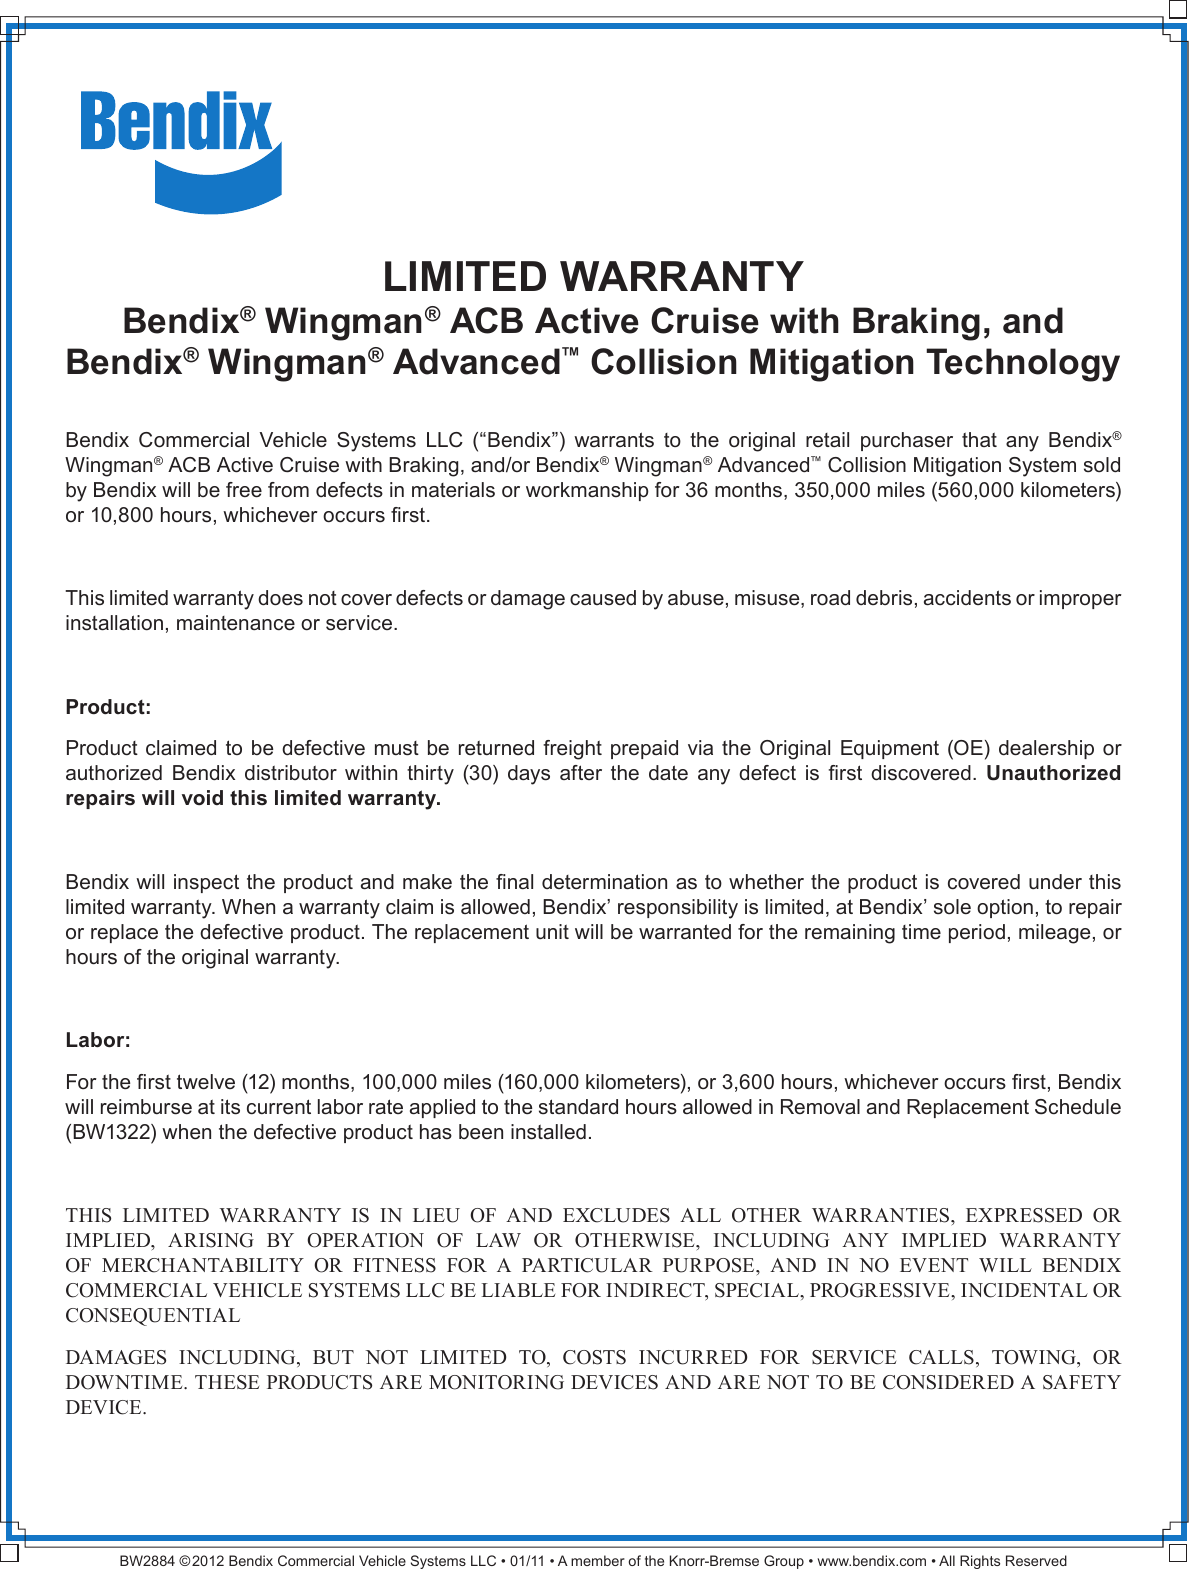 Page 1 of 1 - Bendix Bendix-Bw2884-Users-Manual- BW2884 - Wingman Warranty_in_sign-off  Bendix-bw2884-users-manual